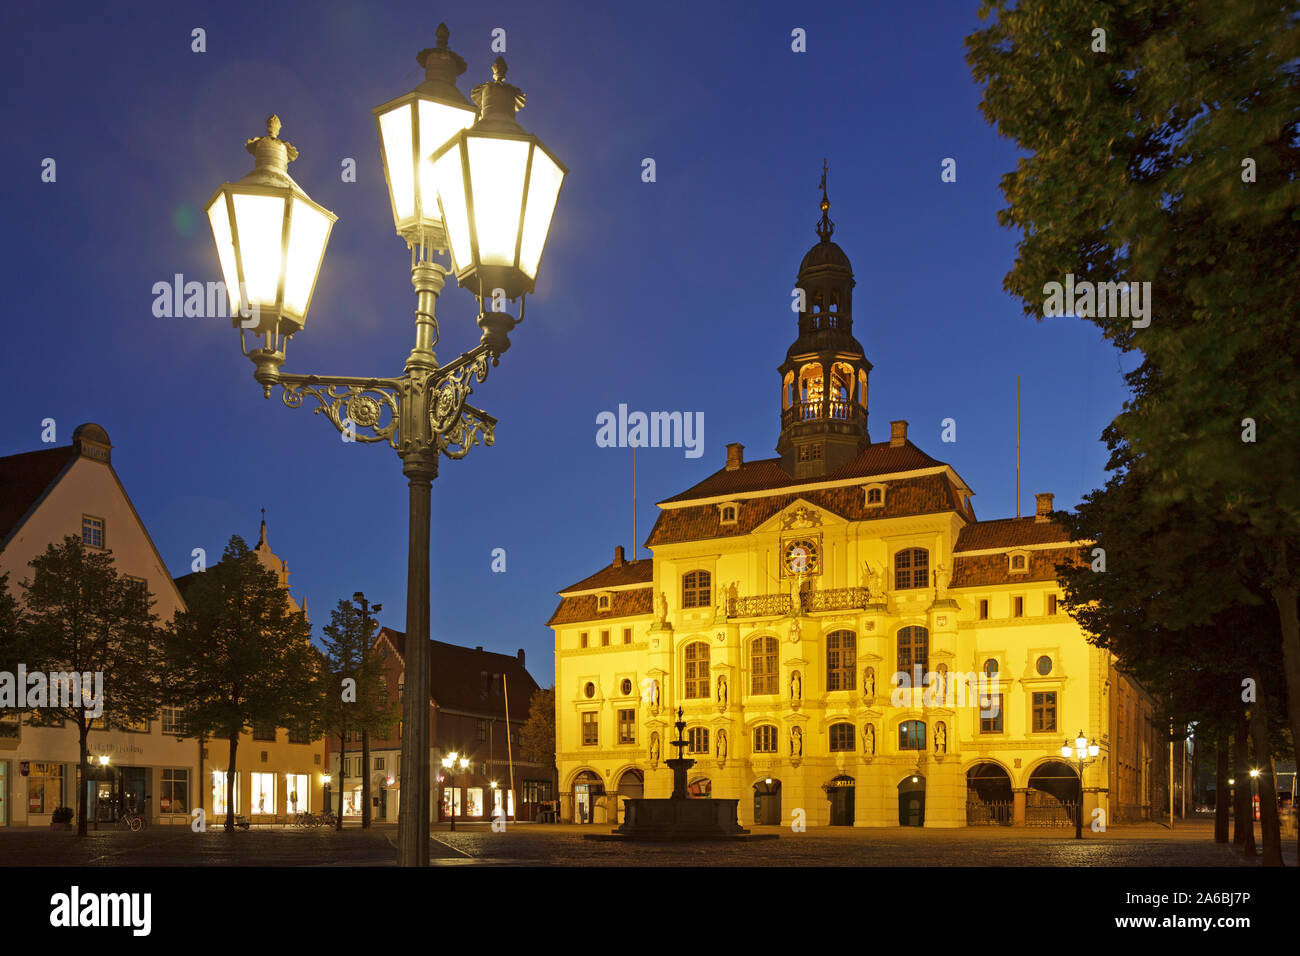 Ein Abend Foto des Rathauses in Lüneburg, Niedersachsen, Deutschland. Stockfoto